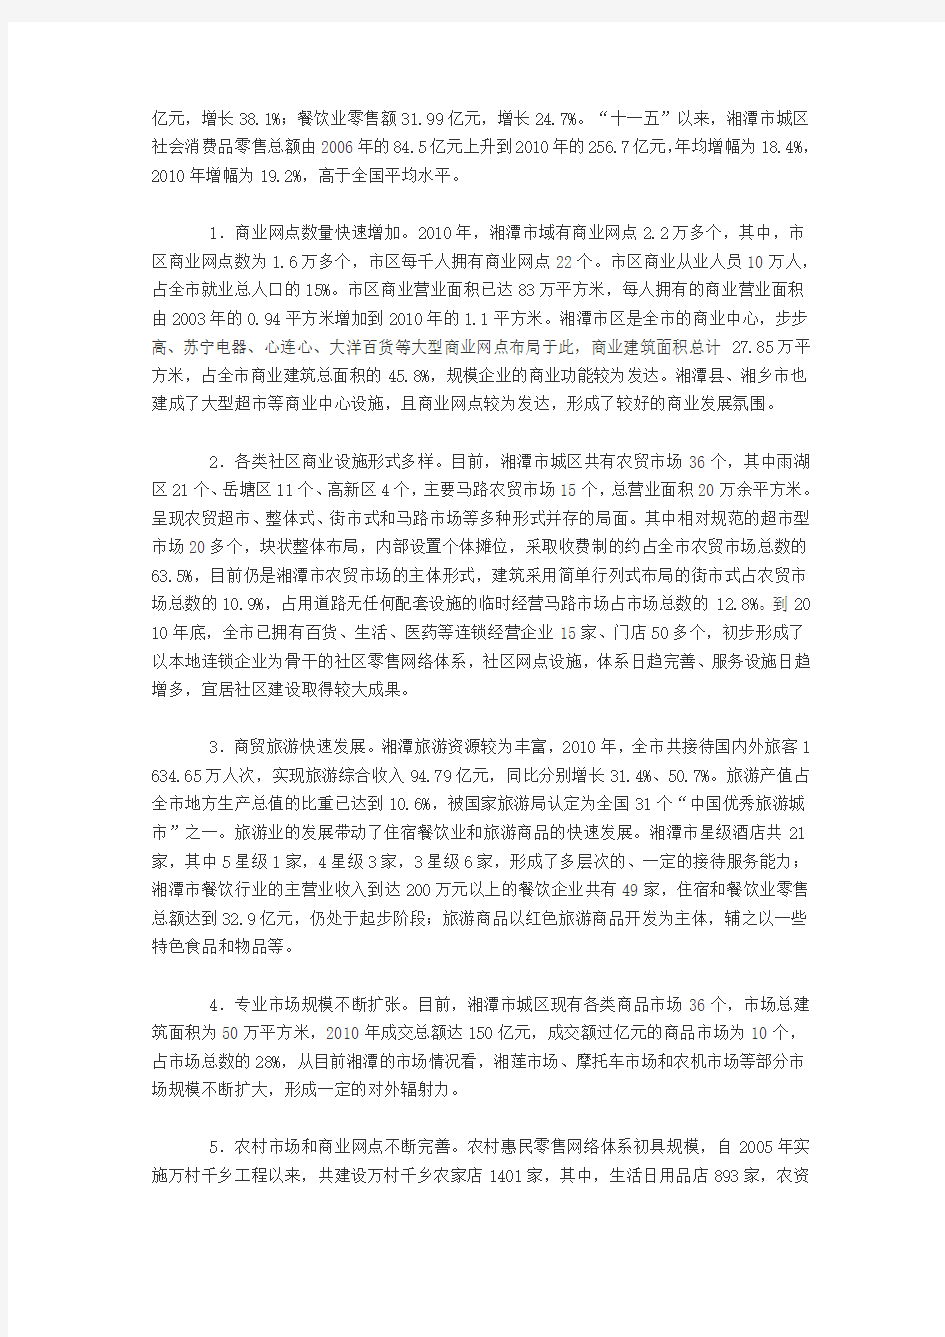 湘潭市现代商贸与物流一体化发展规划(2011-2020年)